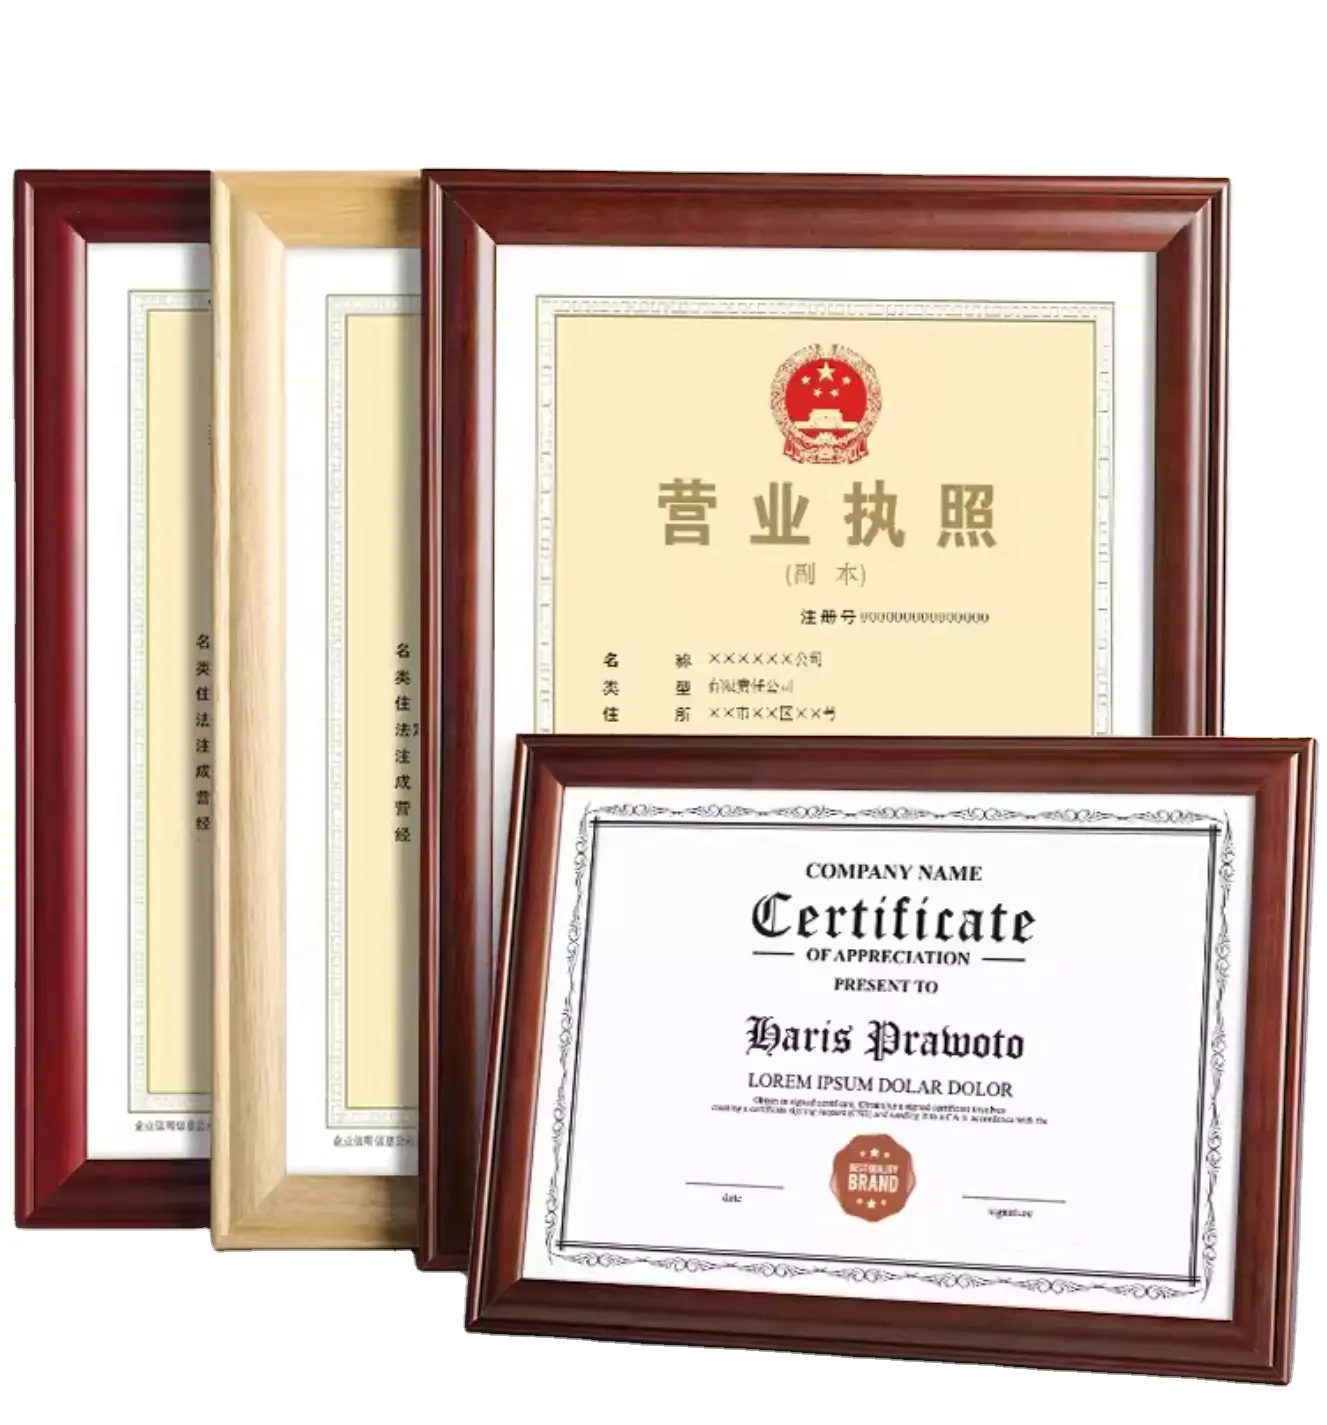 Bingkai foto walnut polos foto keluarga berkilau dokumen sertifikat kelulusan Universitas lisensi Bisnis otorisasi merek